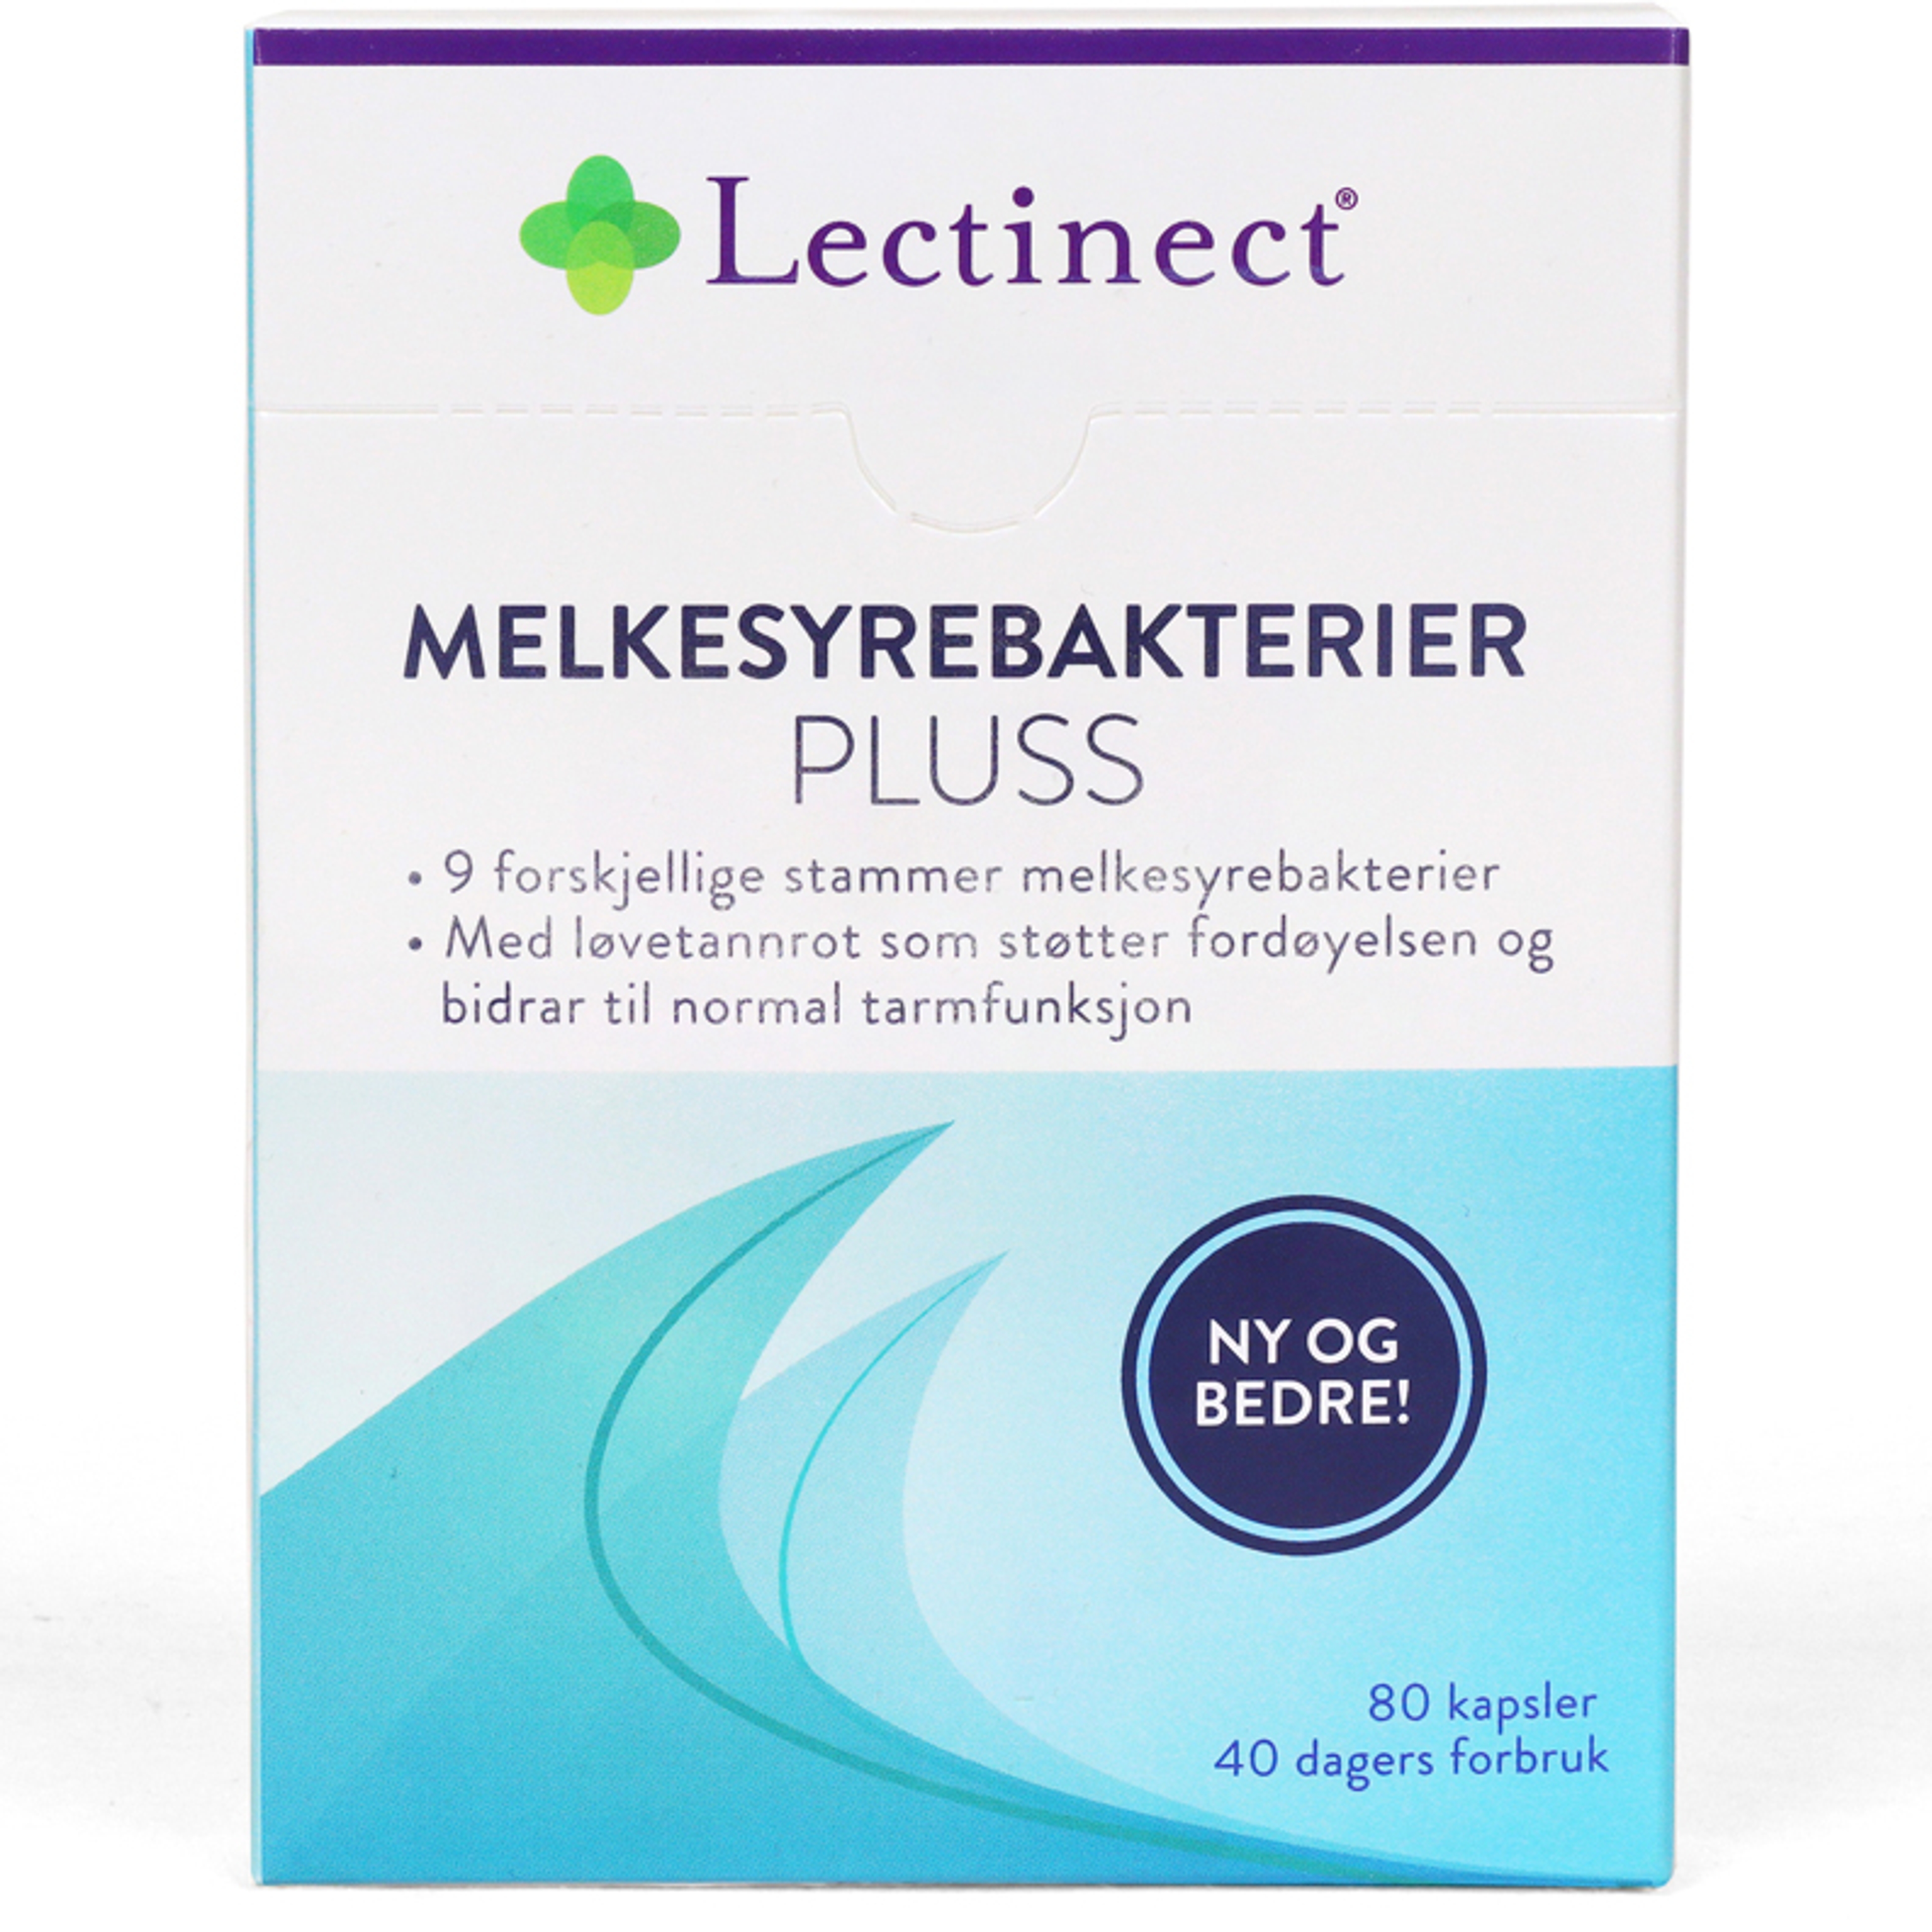 Lectinect-Melkesyrebakterier-Pluss.jpg